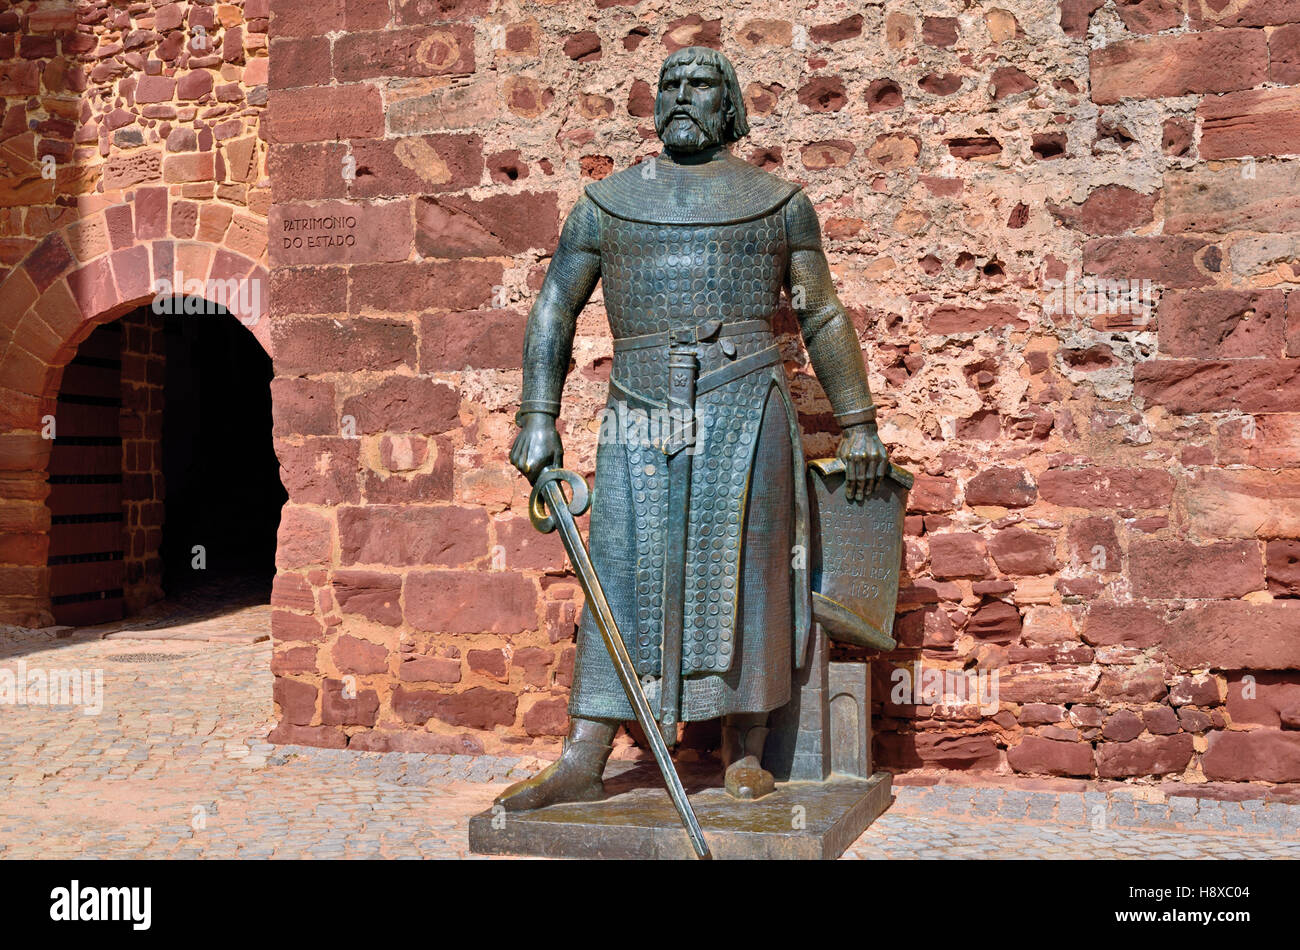 Portogallo: statua in bronzo del re Dom Sancho I. nella parte anteriore del castello moresco di Silves Foto Stock